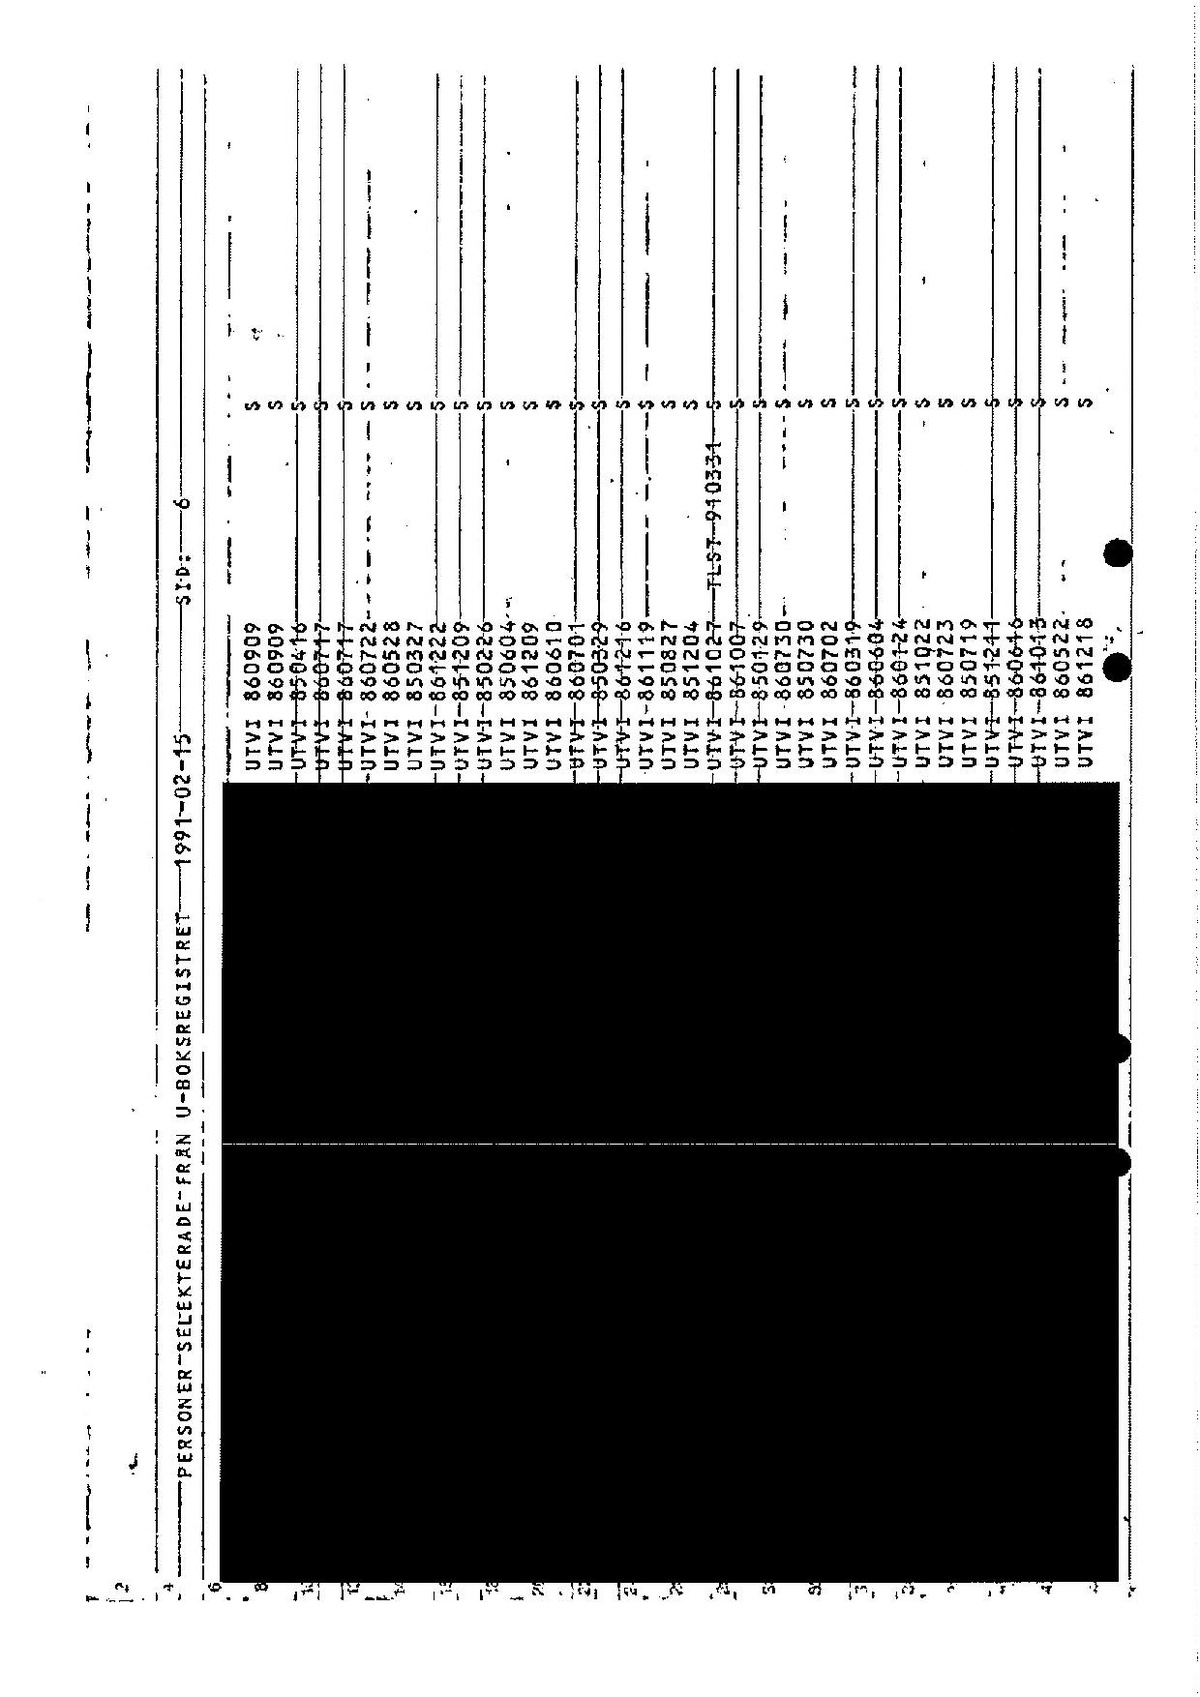 Pol-1991-02-18 A13687-00 Lista utvisningar samt slagning.pdf